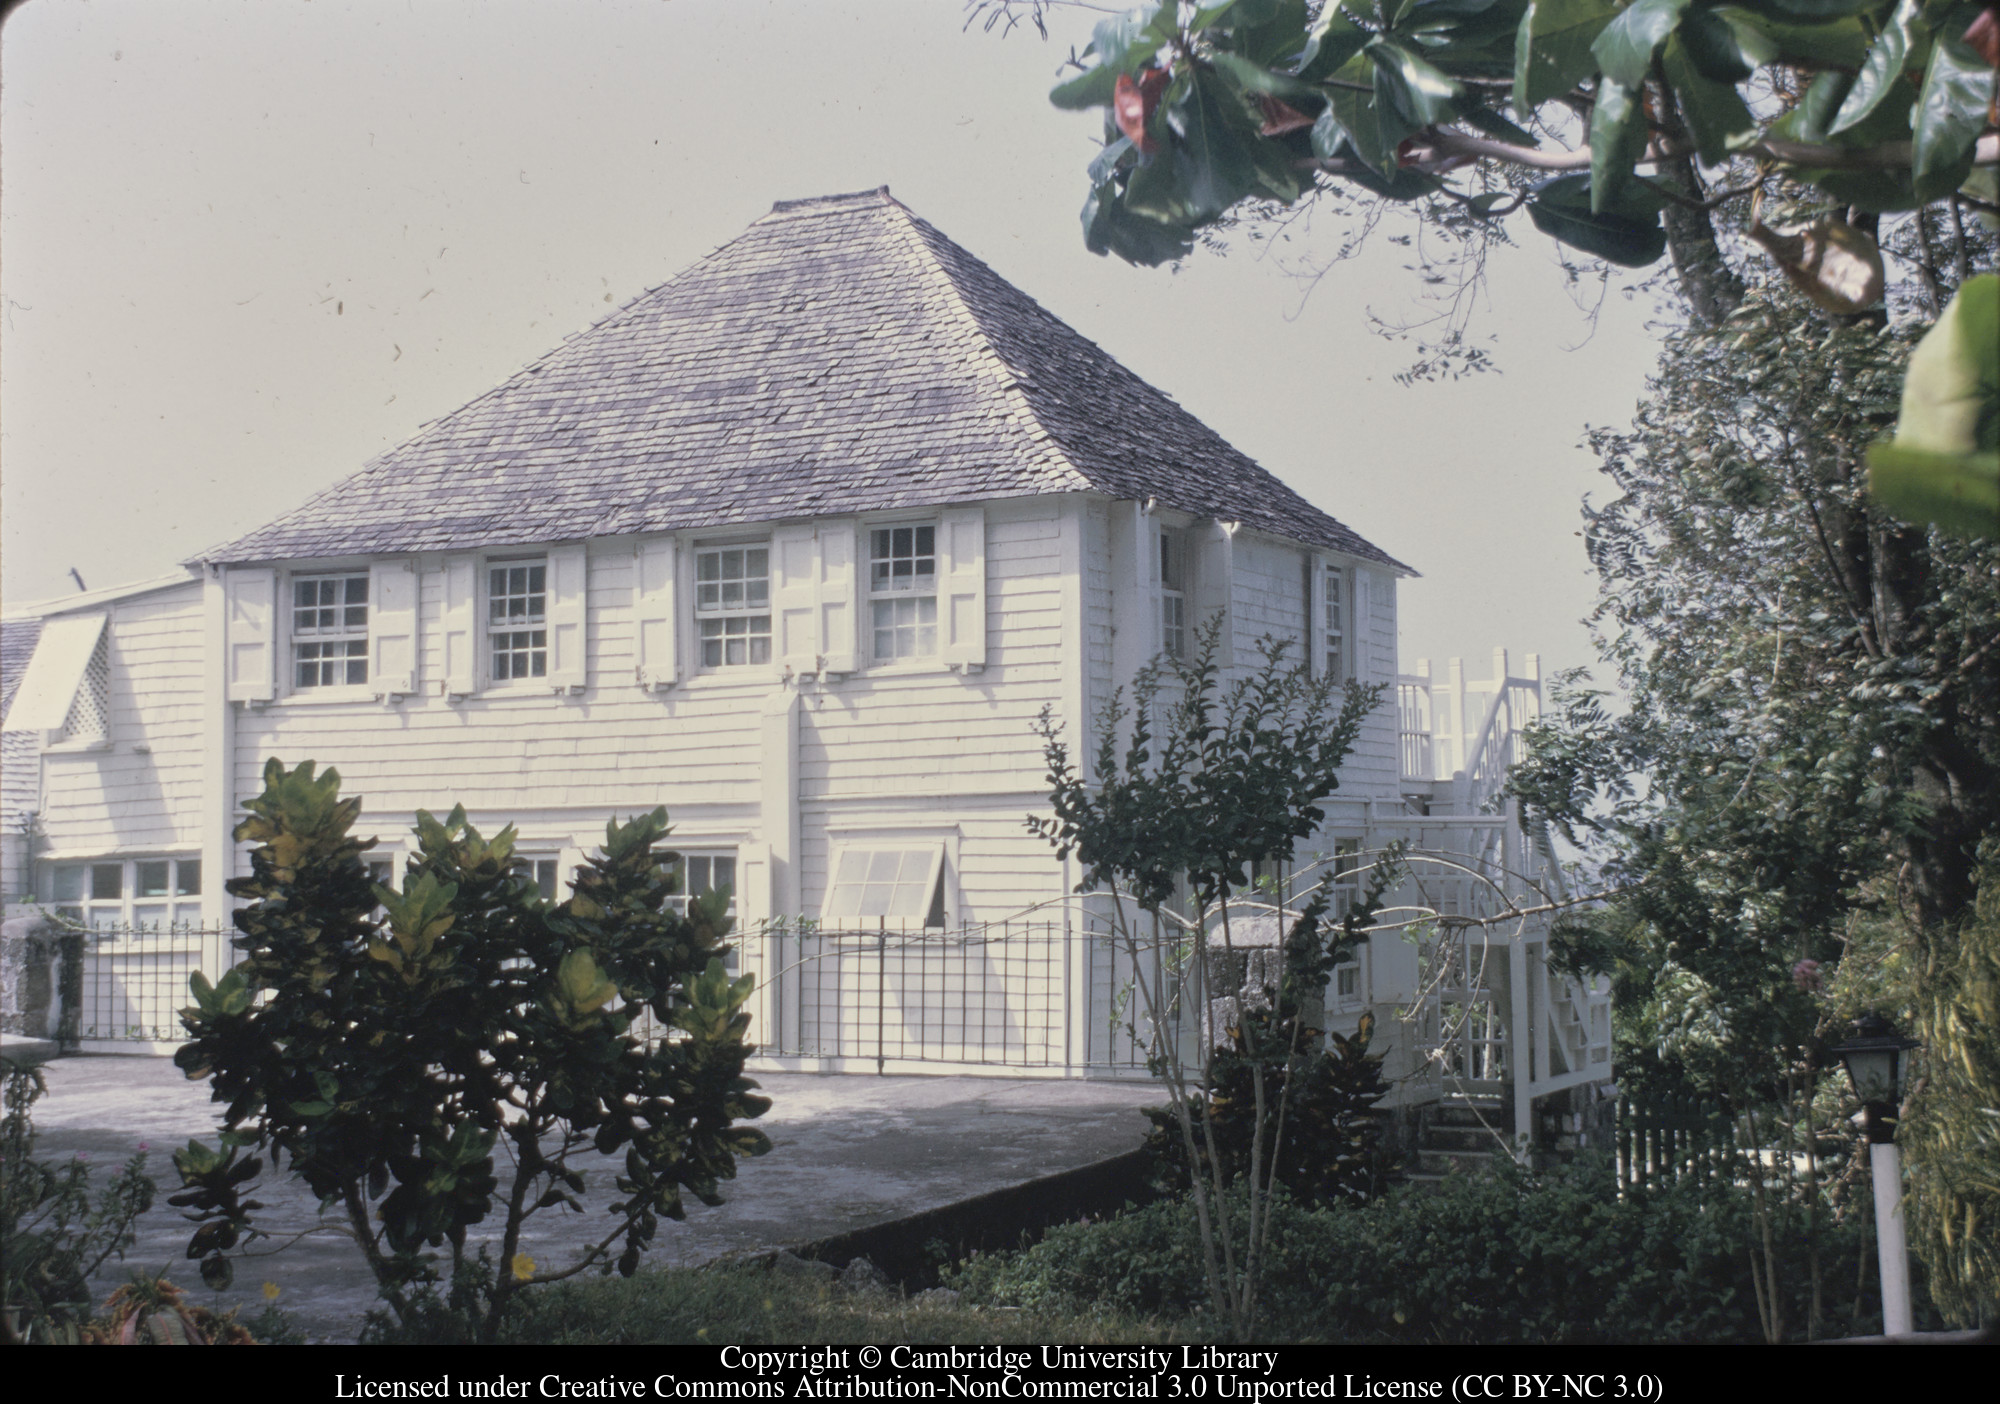 St Kitts : Fairview Hotel, 1972